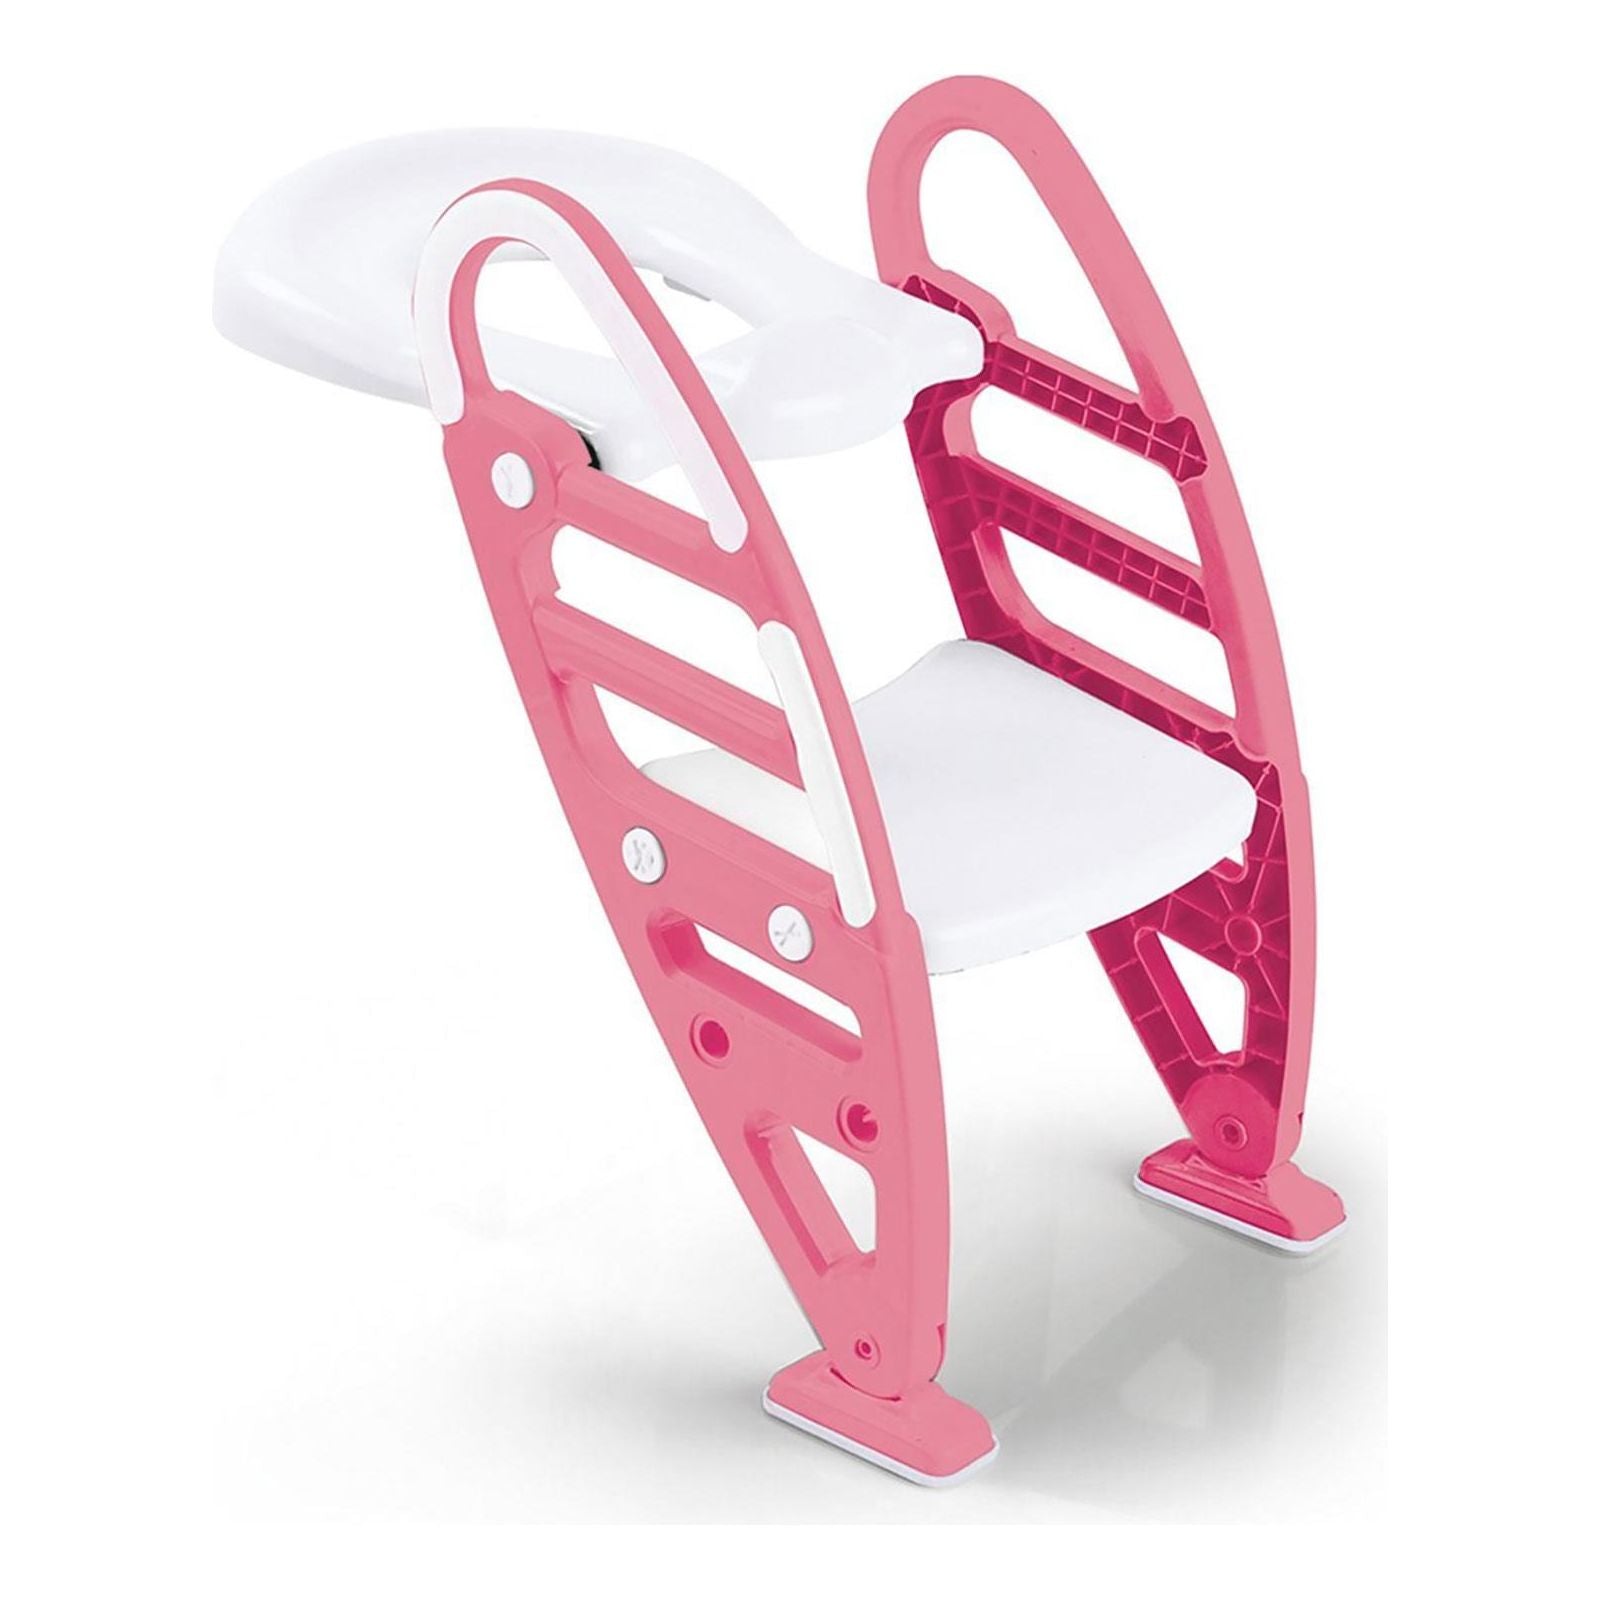 Dolu 7250 Toilet Trainer Non-Slip Children's Adjustable Ladder - Pink